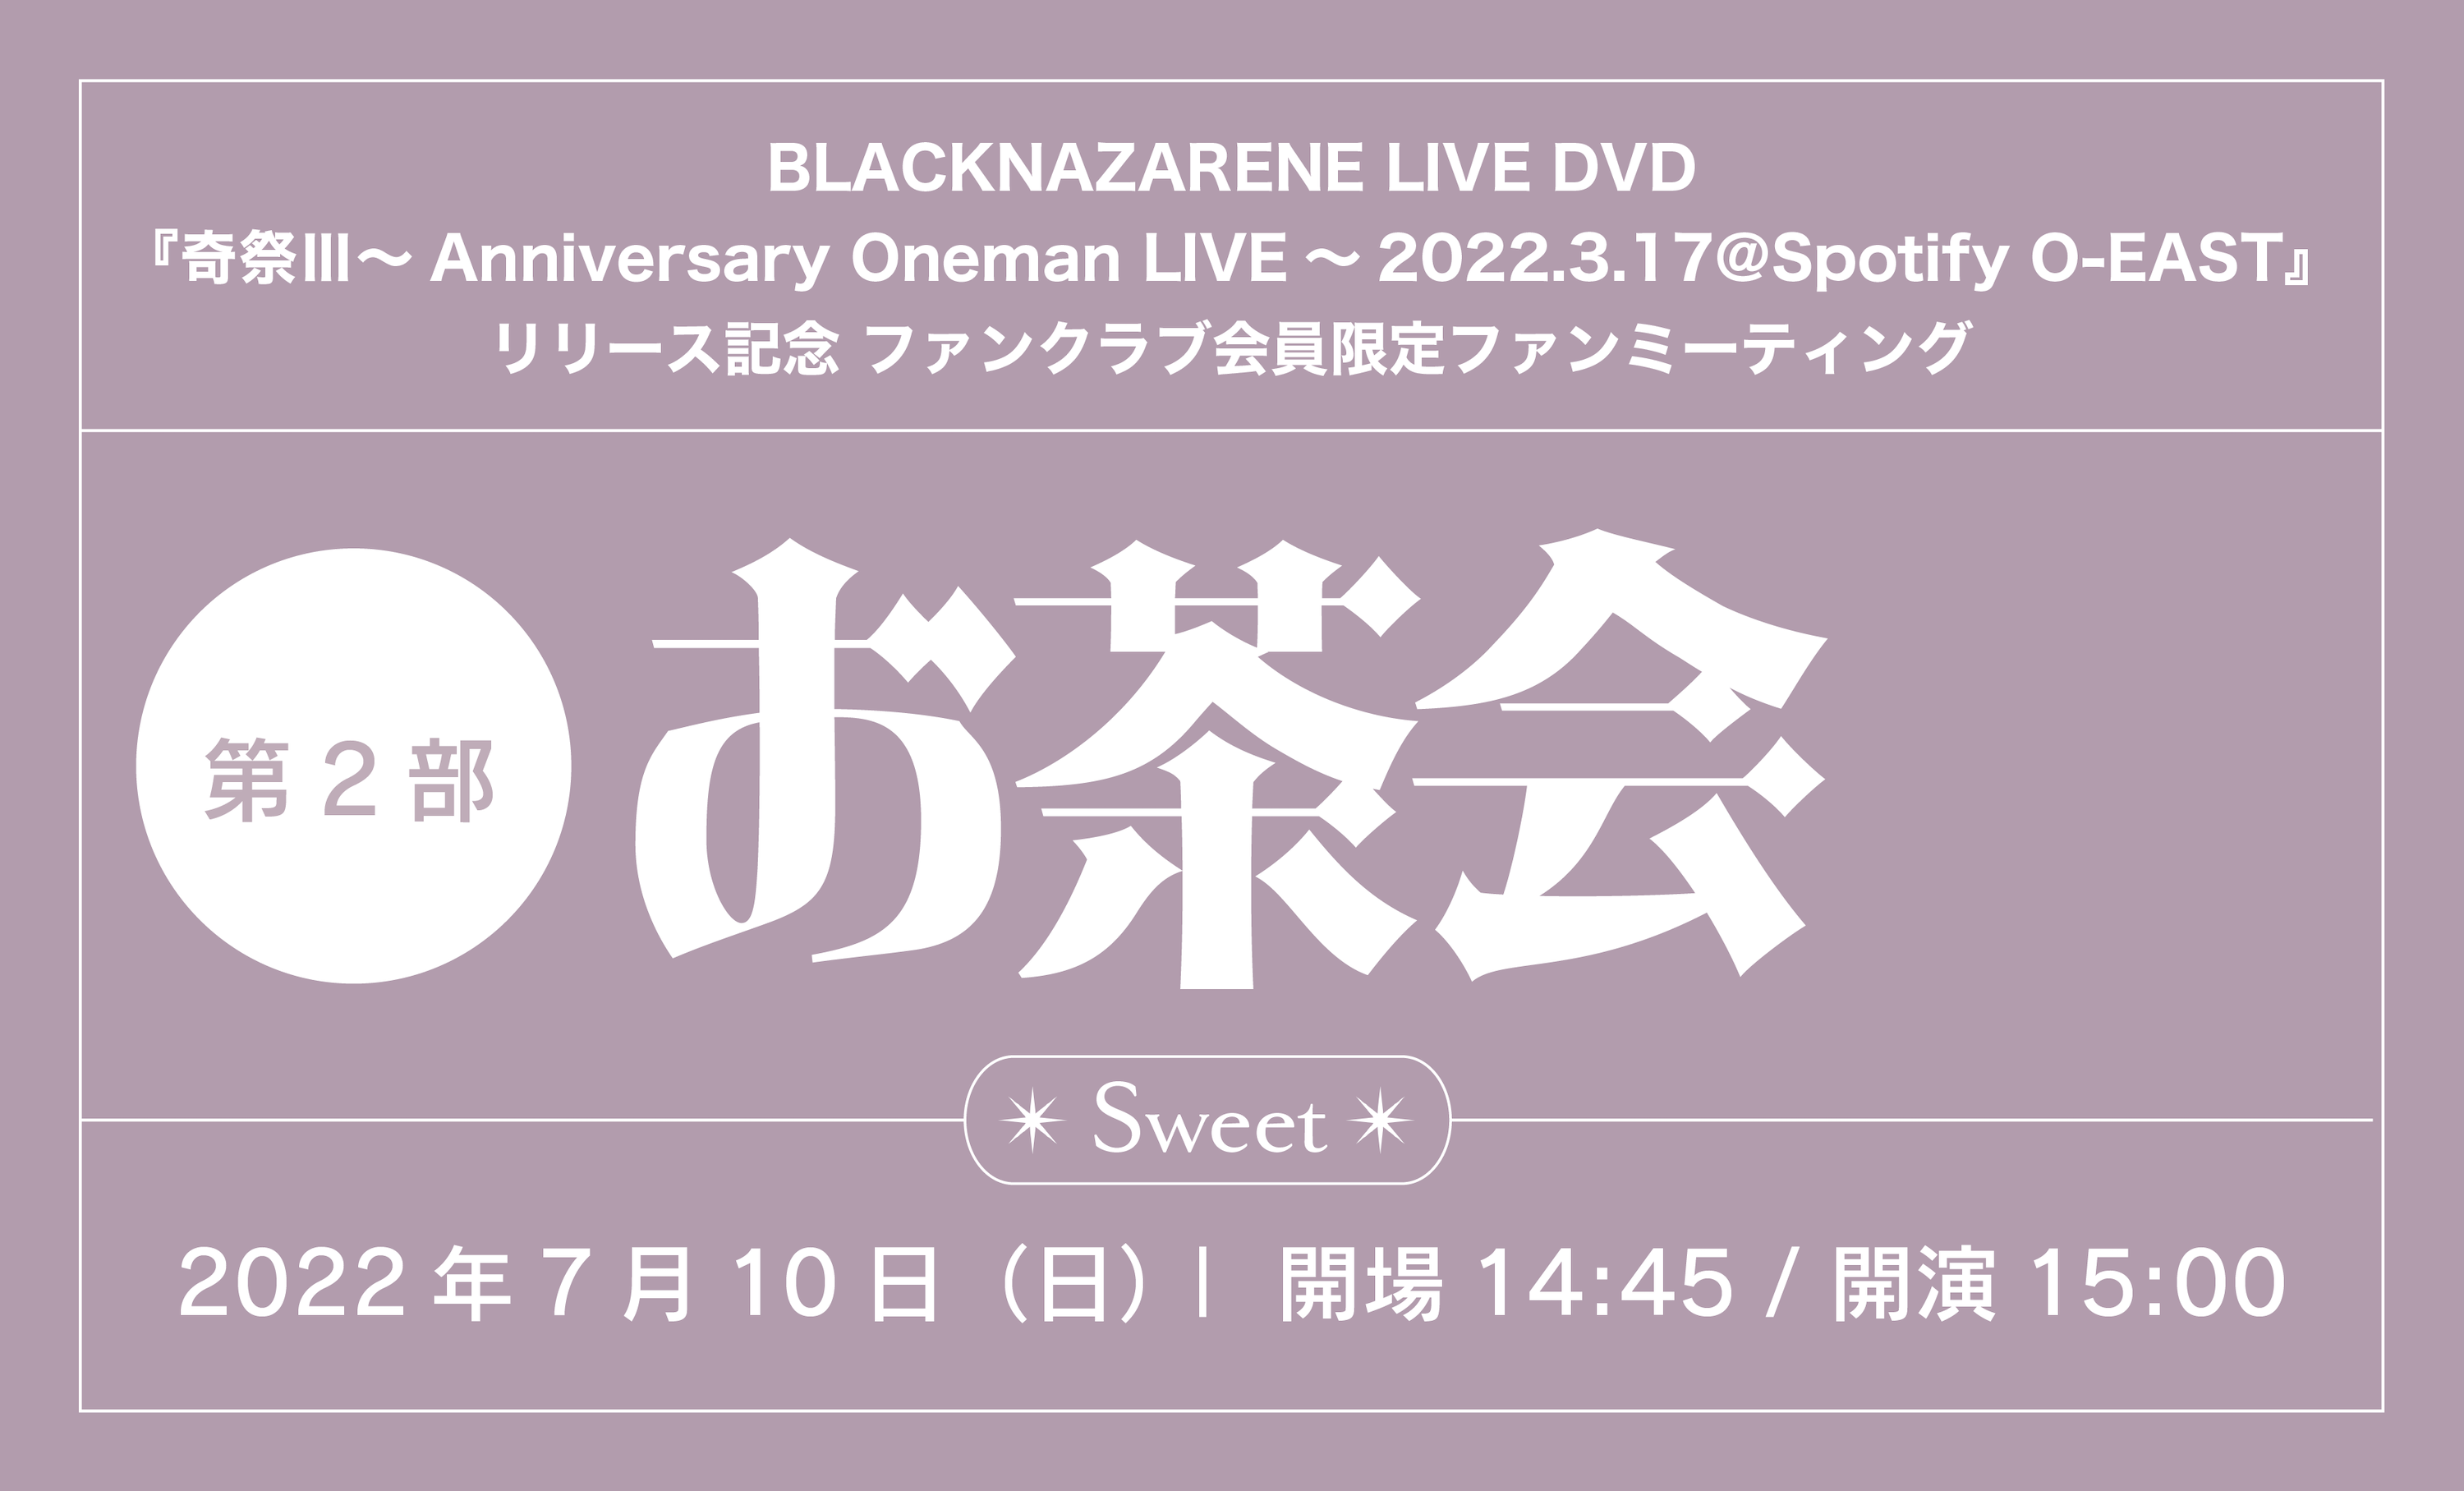 【Fan's会員限定】DVD『奇祭Ⅲ～Anniversary Oneman LIVE～2022.3.17@Spotify O-EAST』ファンクラブ会員限定ファンミーティング「お茶会 第2部～Sweet～」